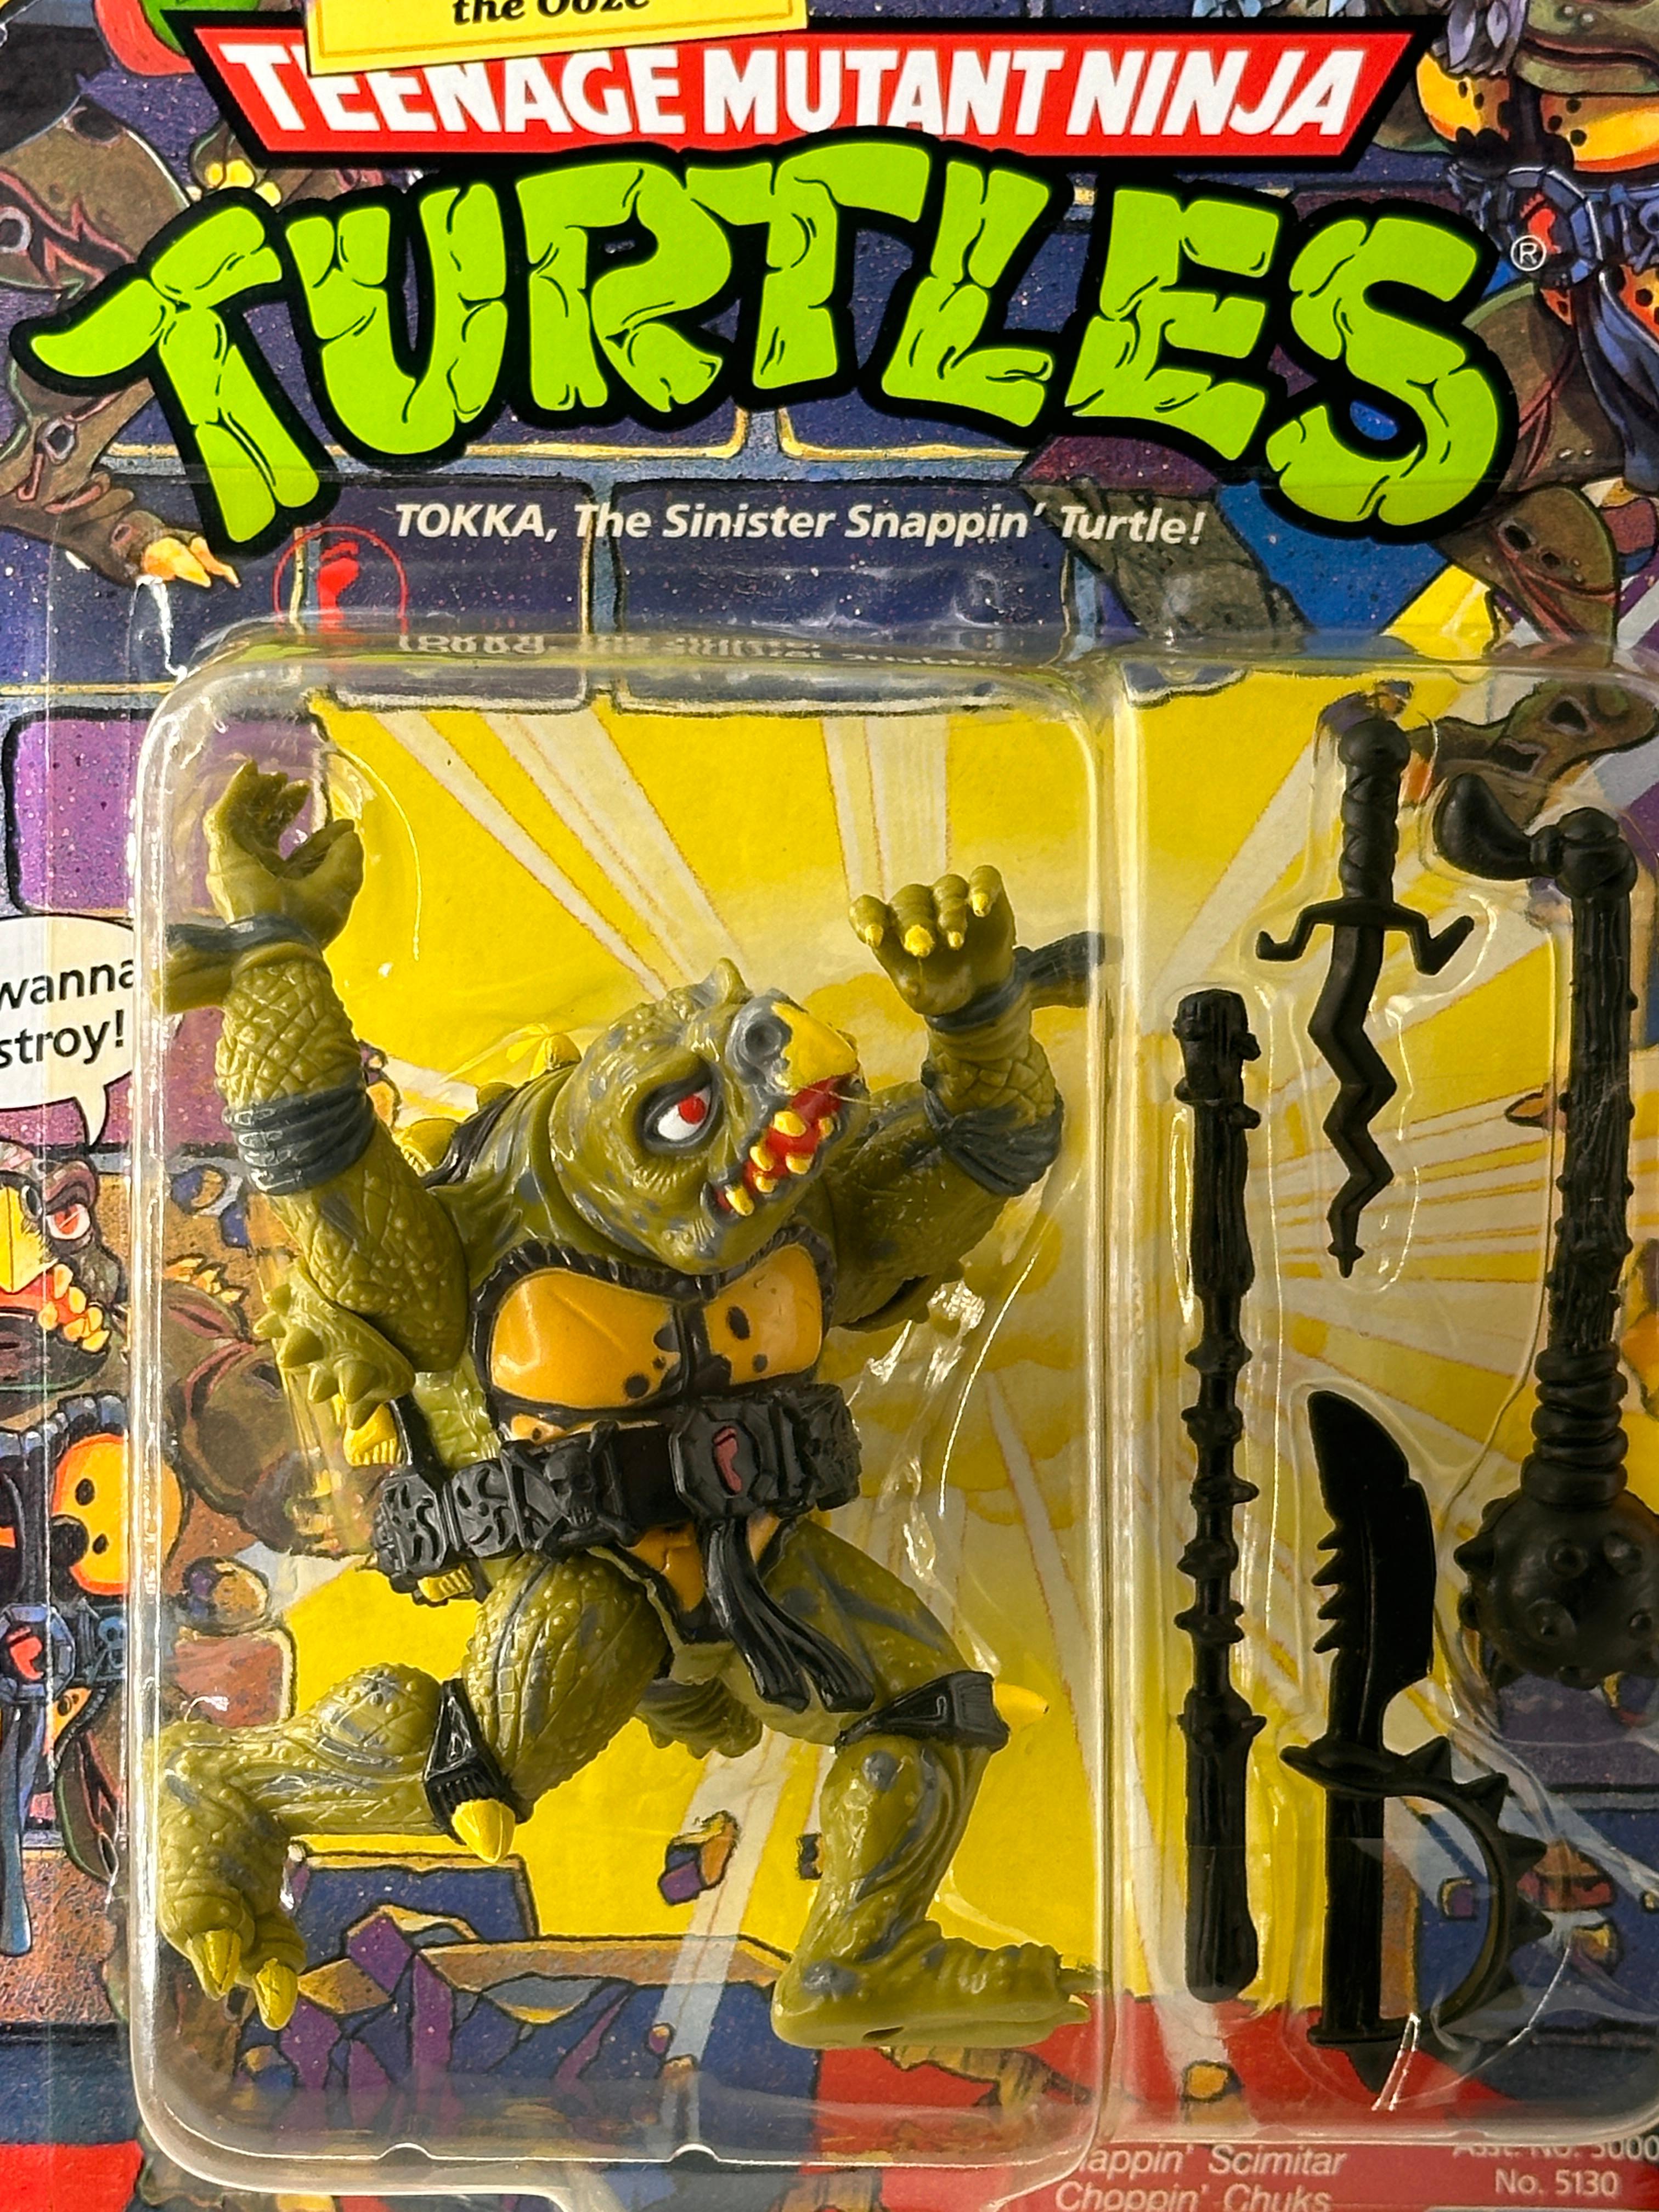 1991 TMNT/Teenage Mutant Ninja Turtles Playmates Tokka Action Figure